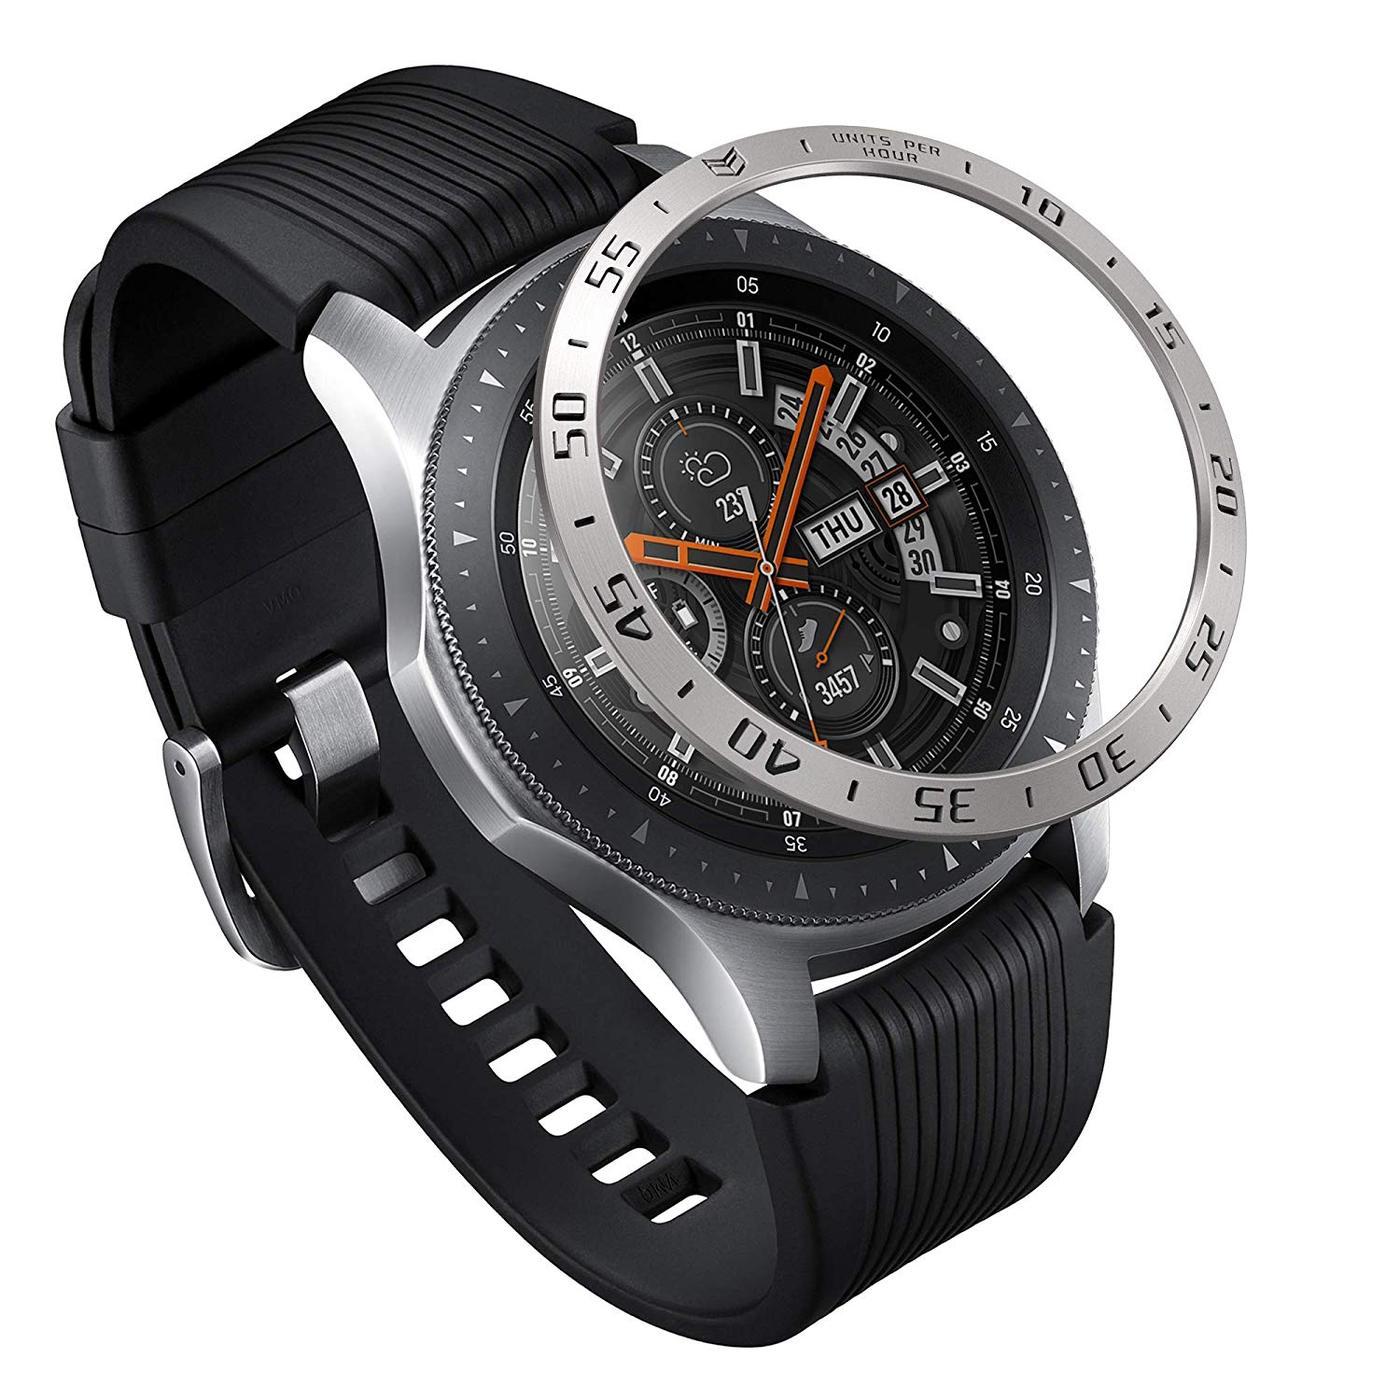 Bezel Styling Galaxy Watch 46mm/Gear S3 Silver